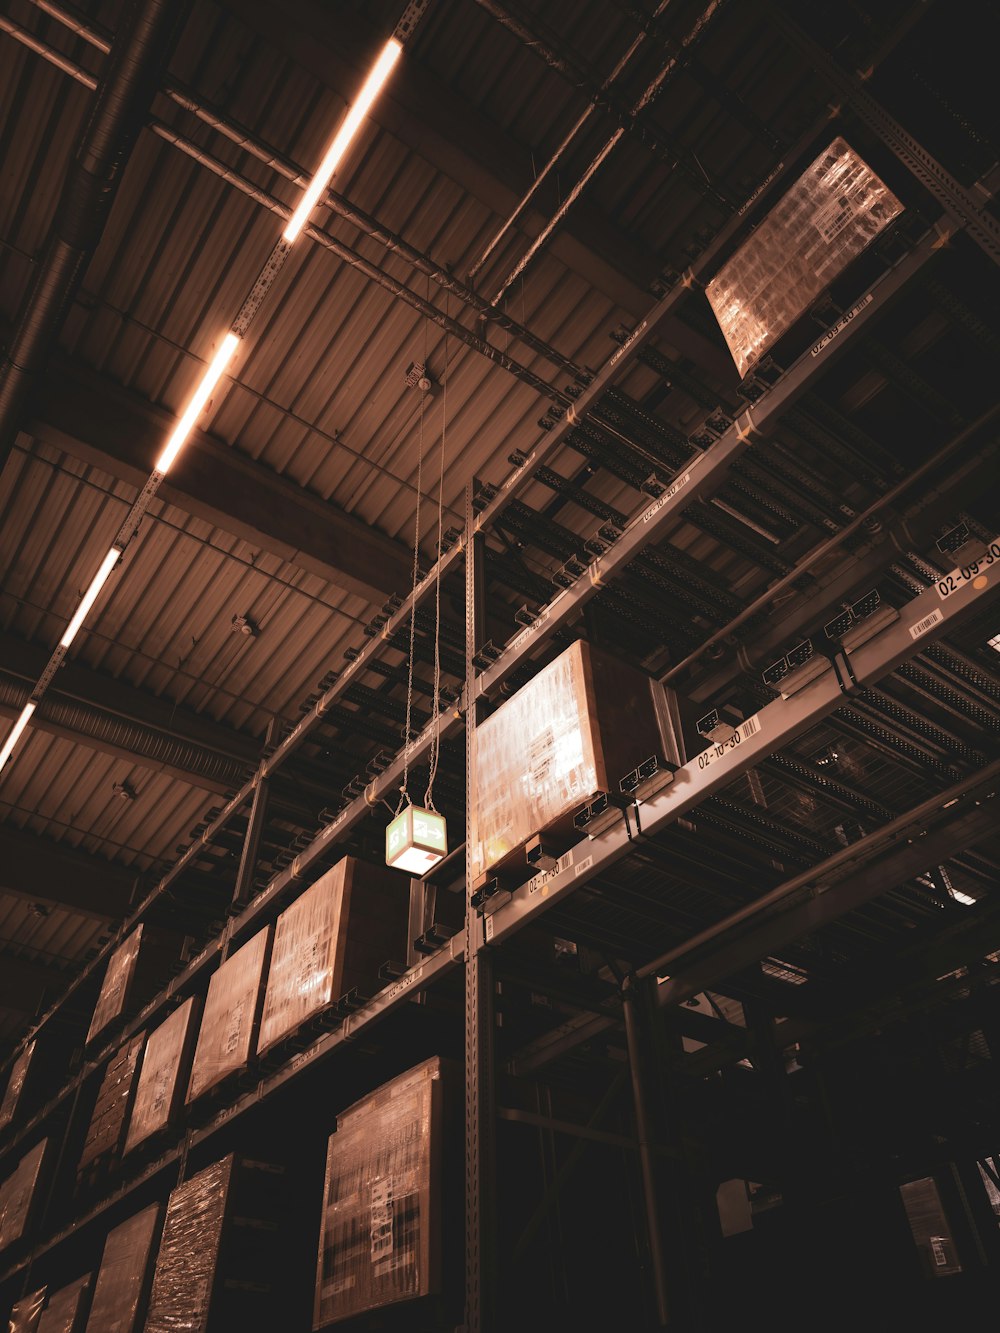 倉庫の天井からぶら下がっているライト